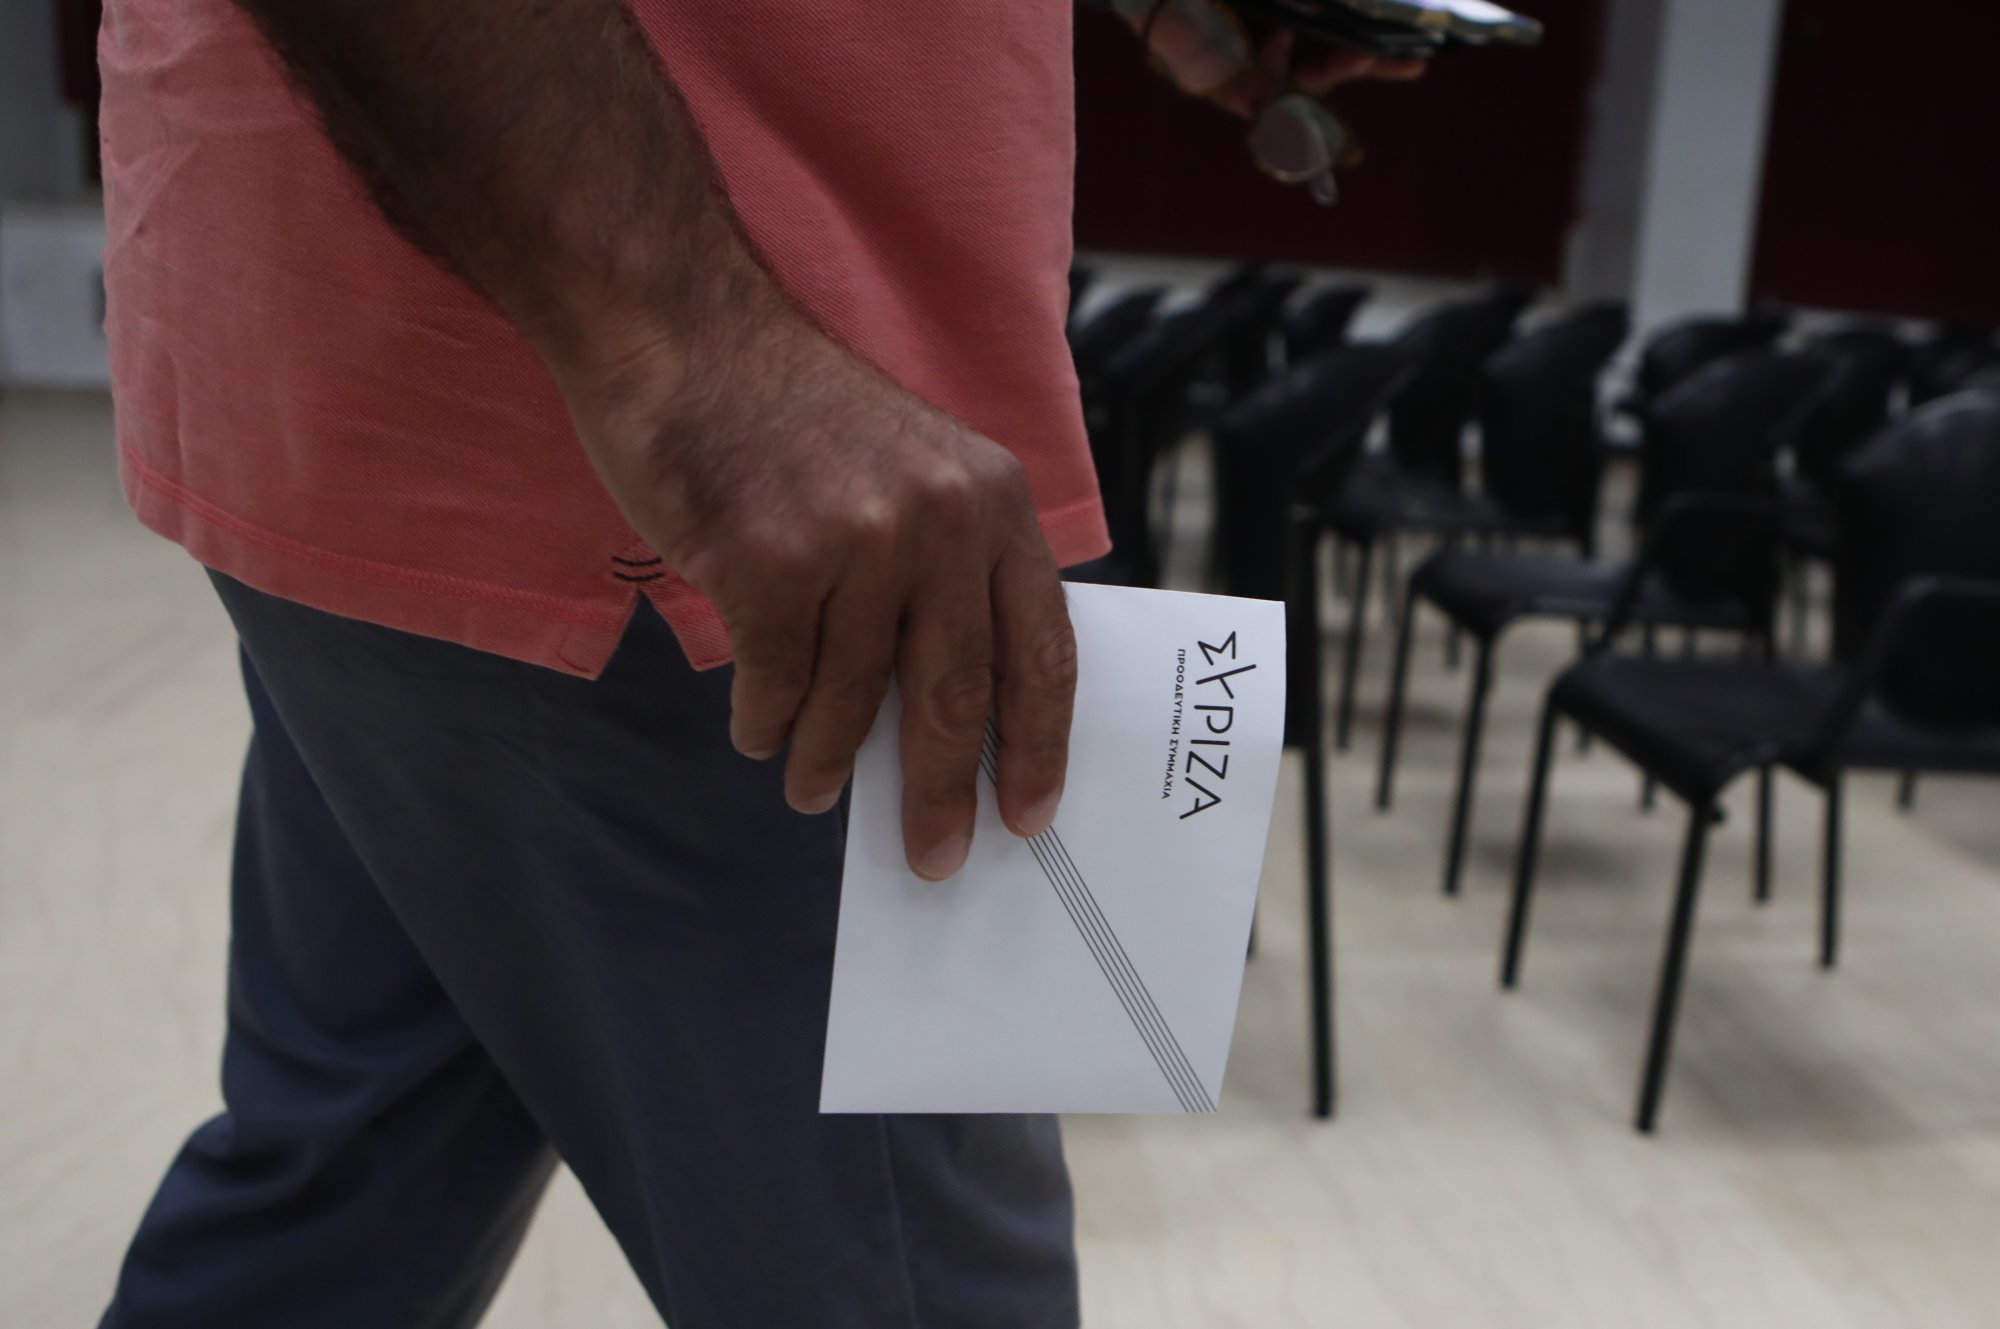 ΣΥΡΙΖΑ: Ξεκινά η εκλογή 35 ευρωβουλευτών - Αισιοδοξία για μεγάλη συμμετοχή, προετοιμασίες όπως του Σεπτεμβρίου